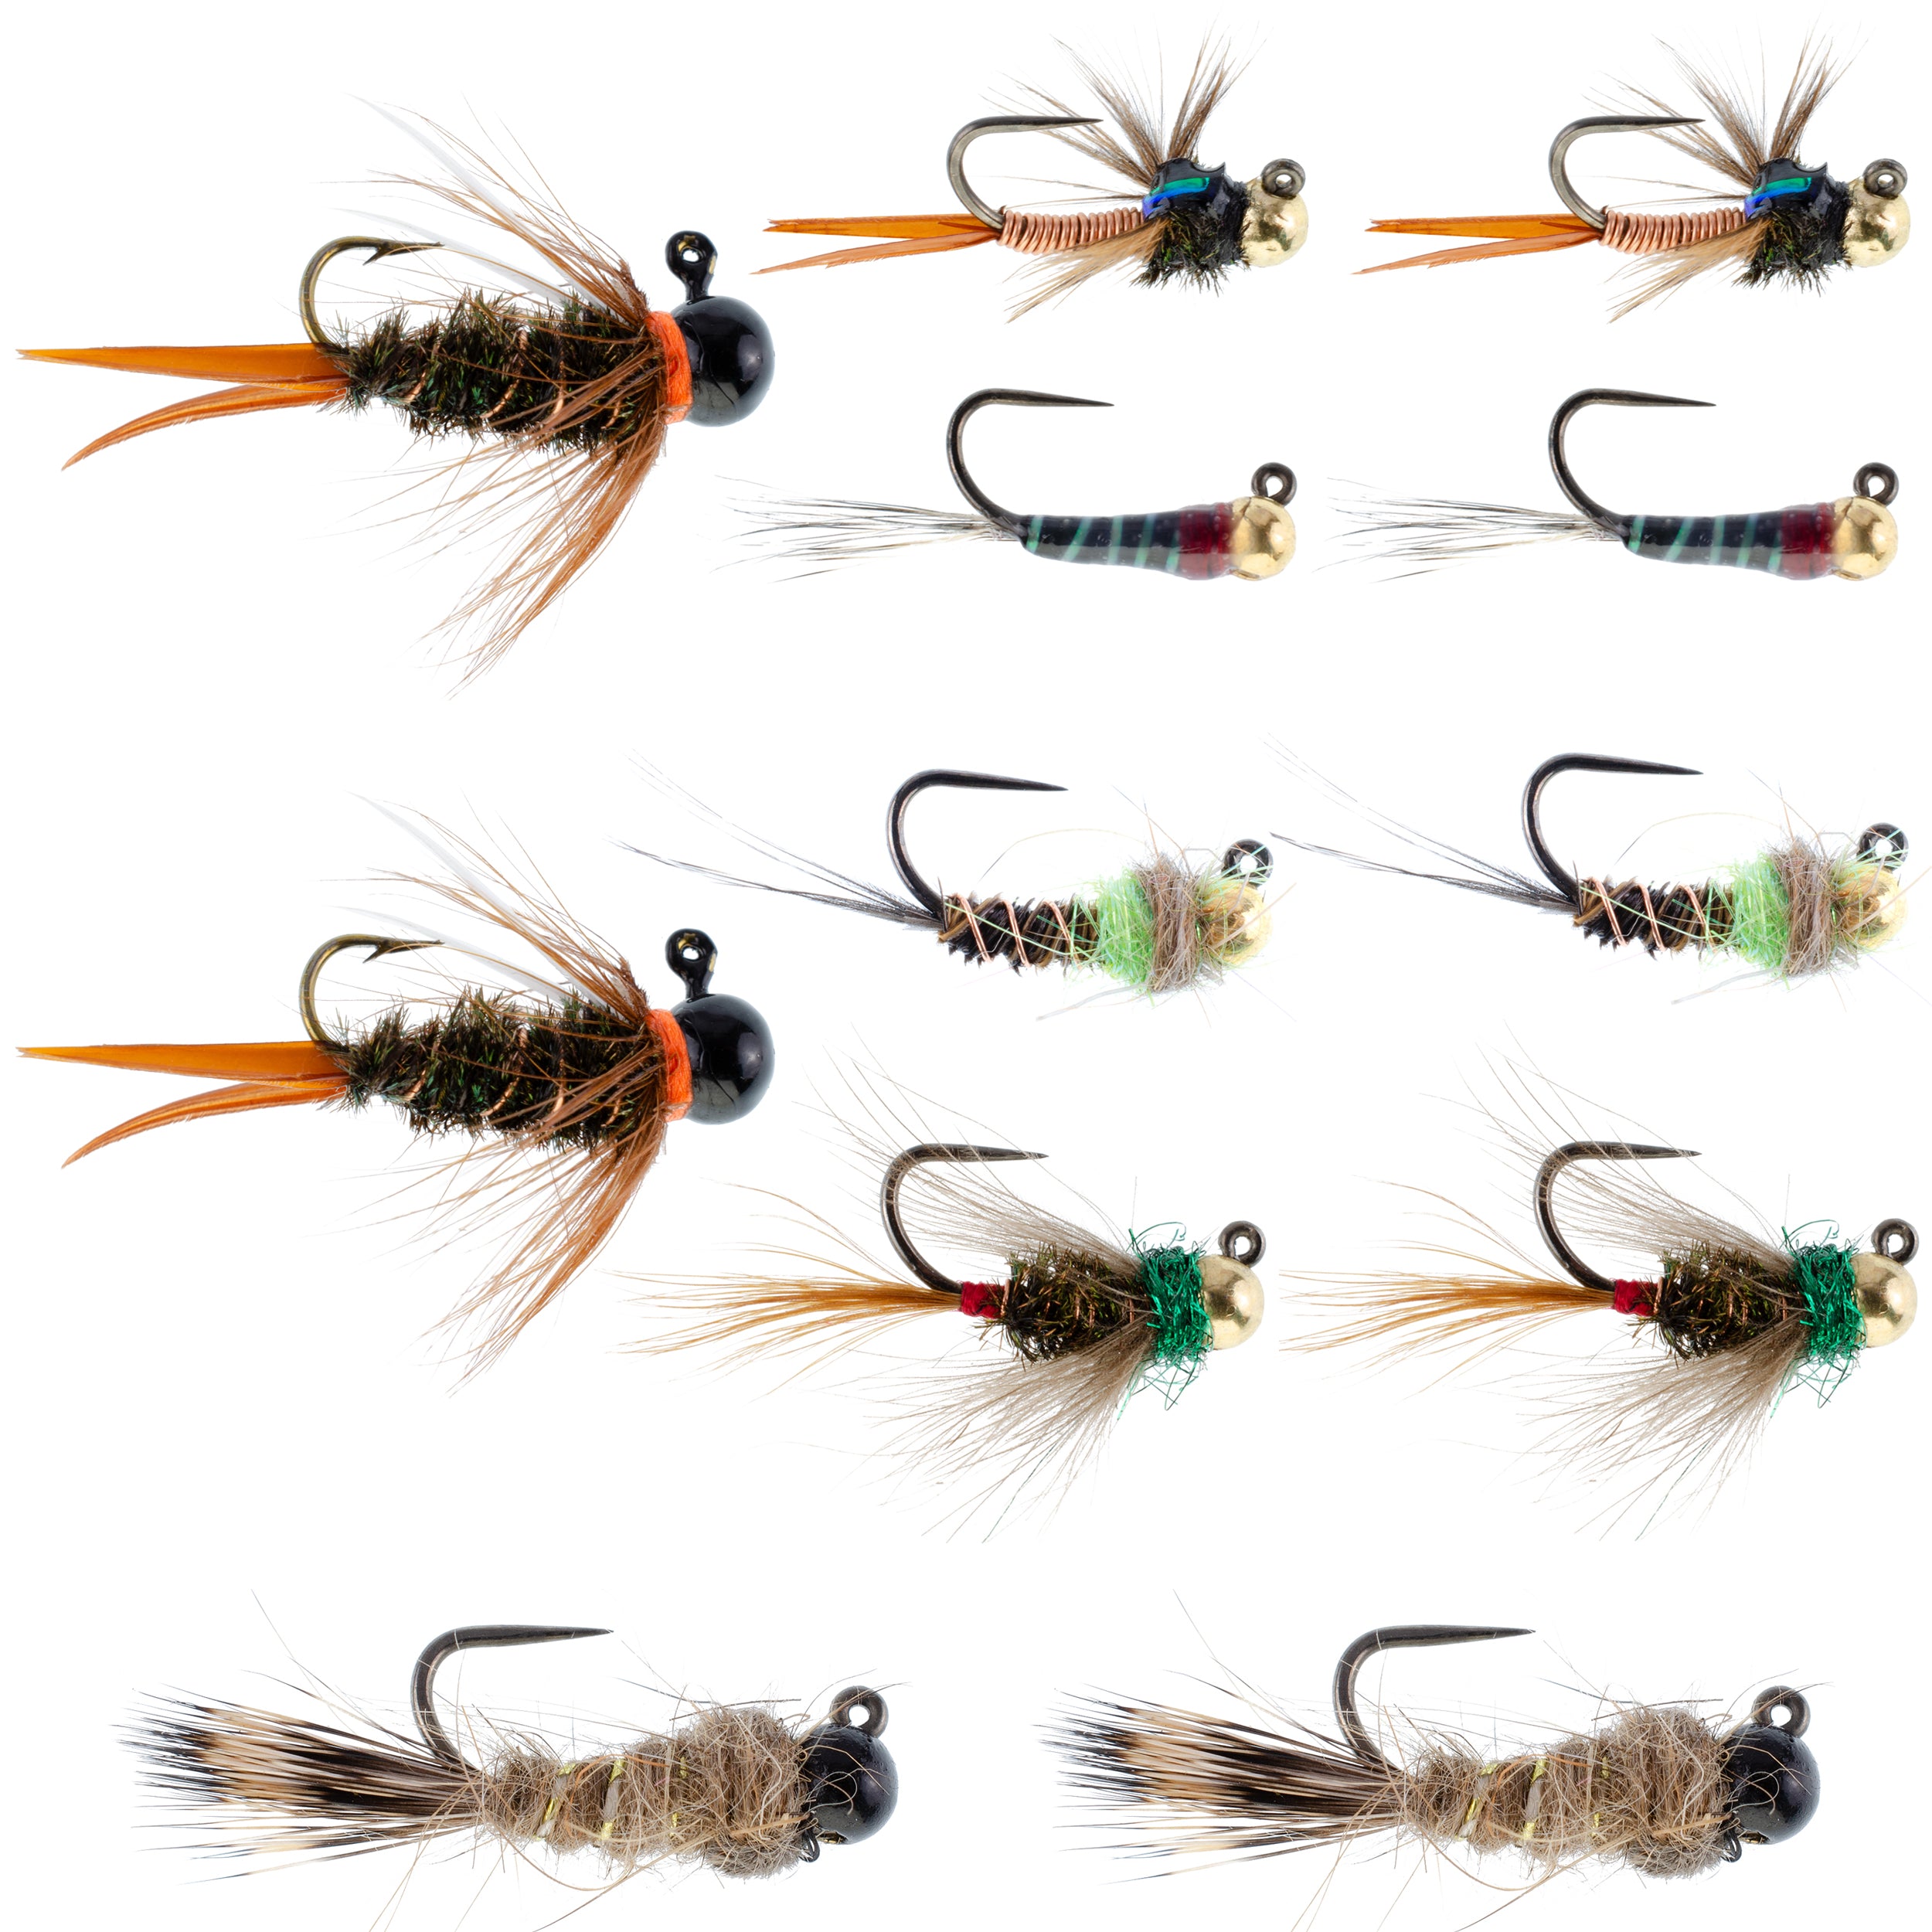 Colección táctica de moscas para pesca con mosca de ninfa checa, una docena de cuentas de tungsteno, surtido de moscas para ninfa europea, 2 de cada uno de 6 patrones, tamaños de anzuelo 12, 14 y 16 